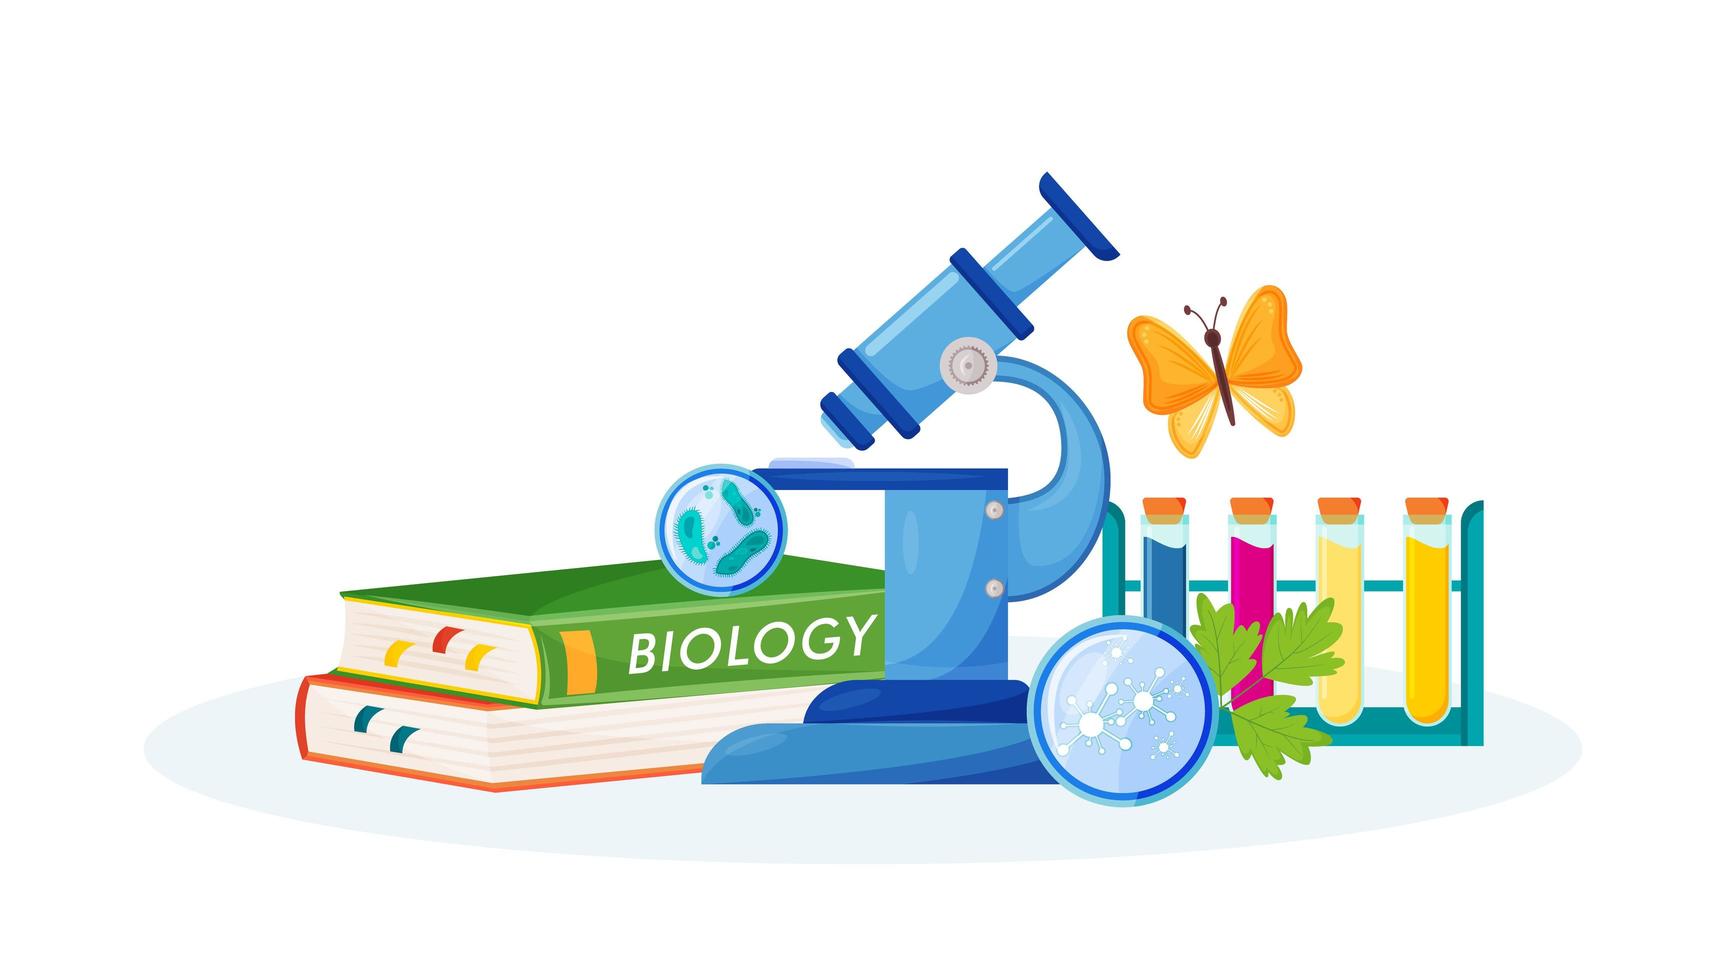 biologi leveranser och böcker vektor